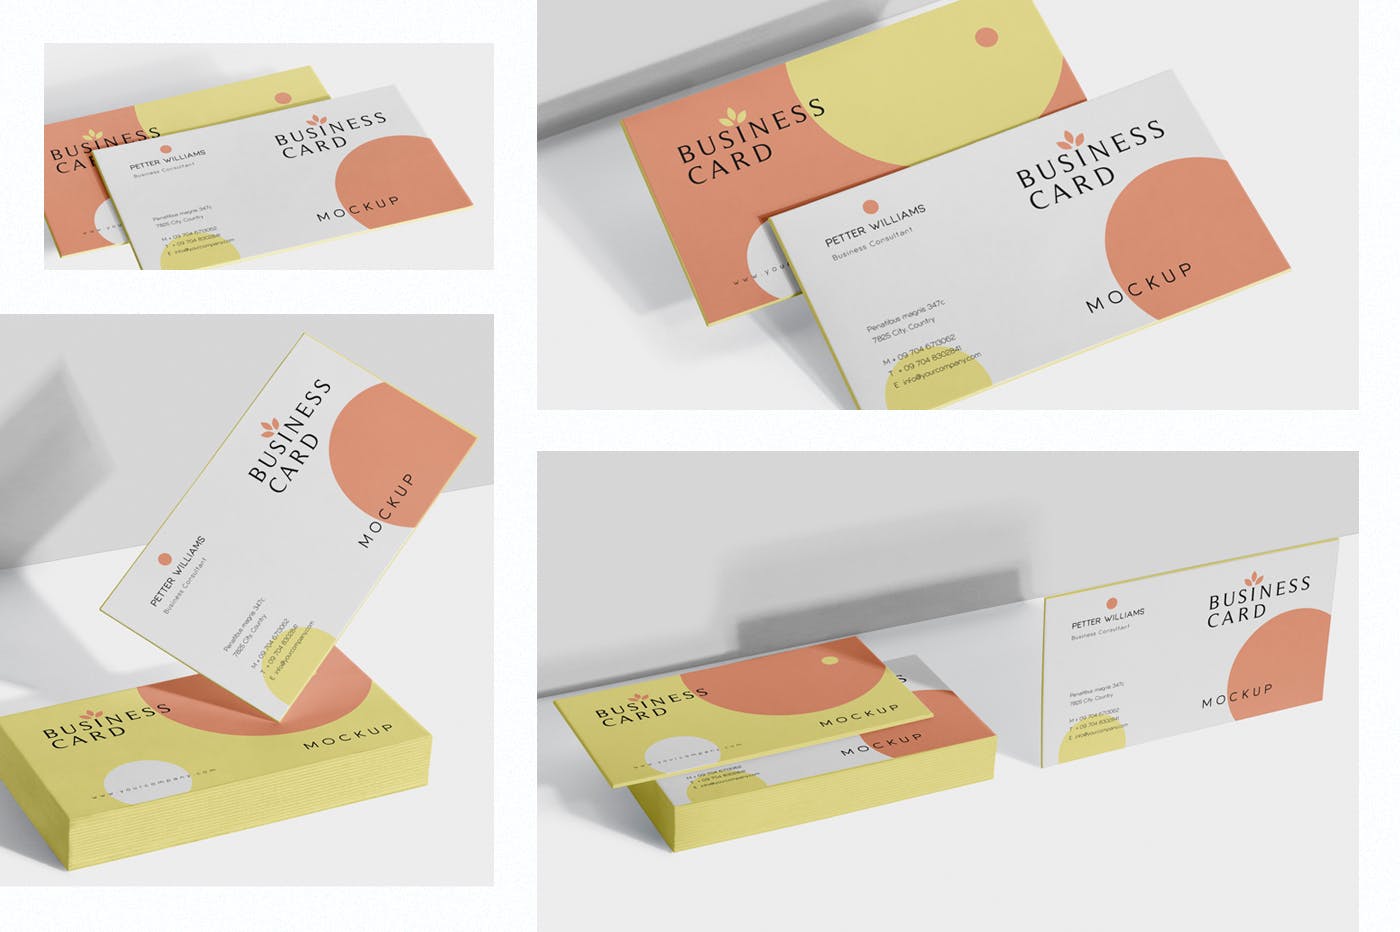 创意企业名片设计阴影效果图蚂蚁素材精选 Business Card Mock-Ups插图(1)